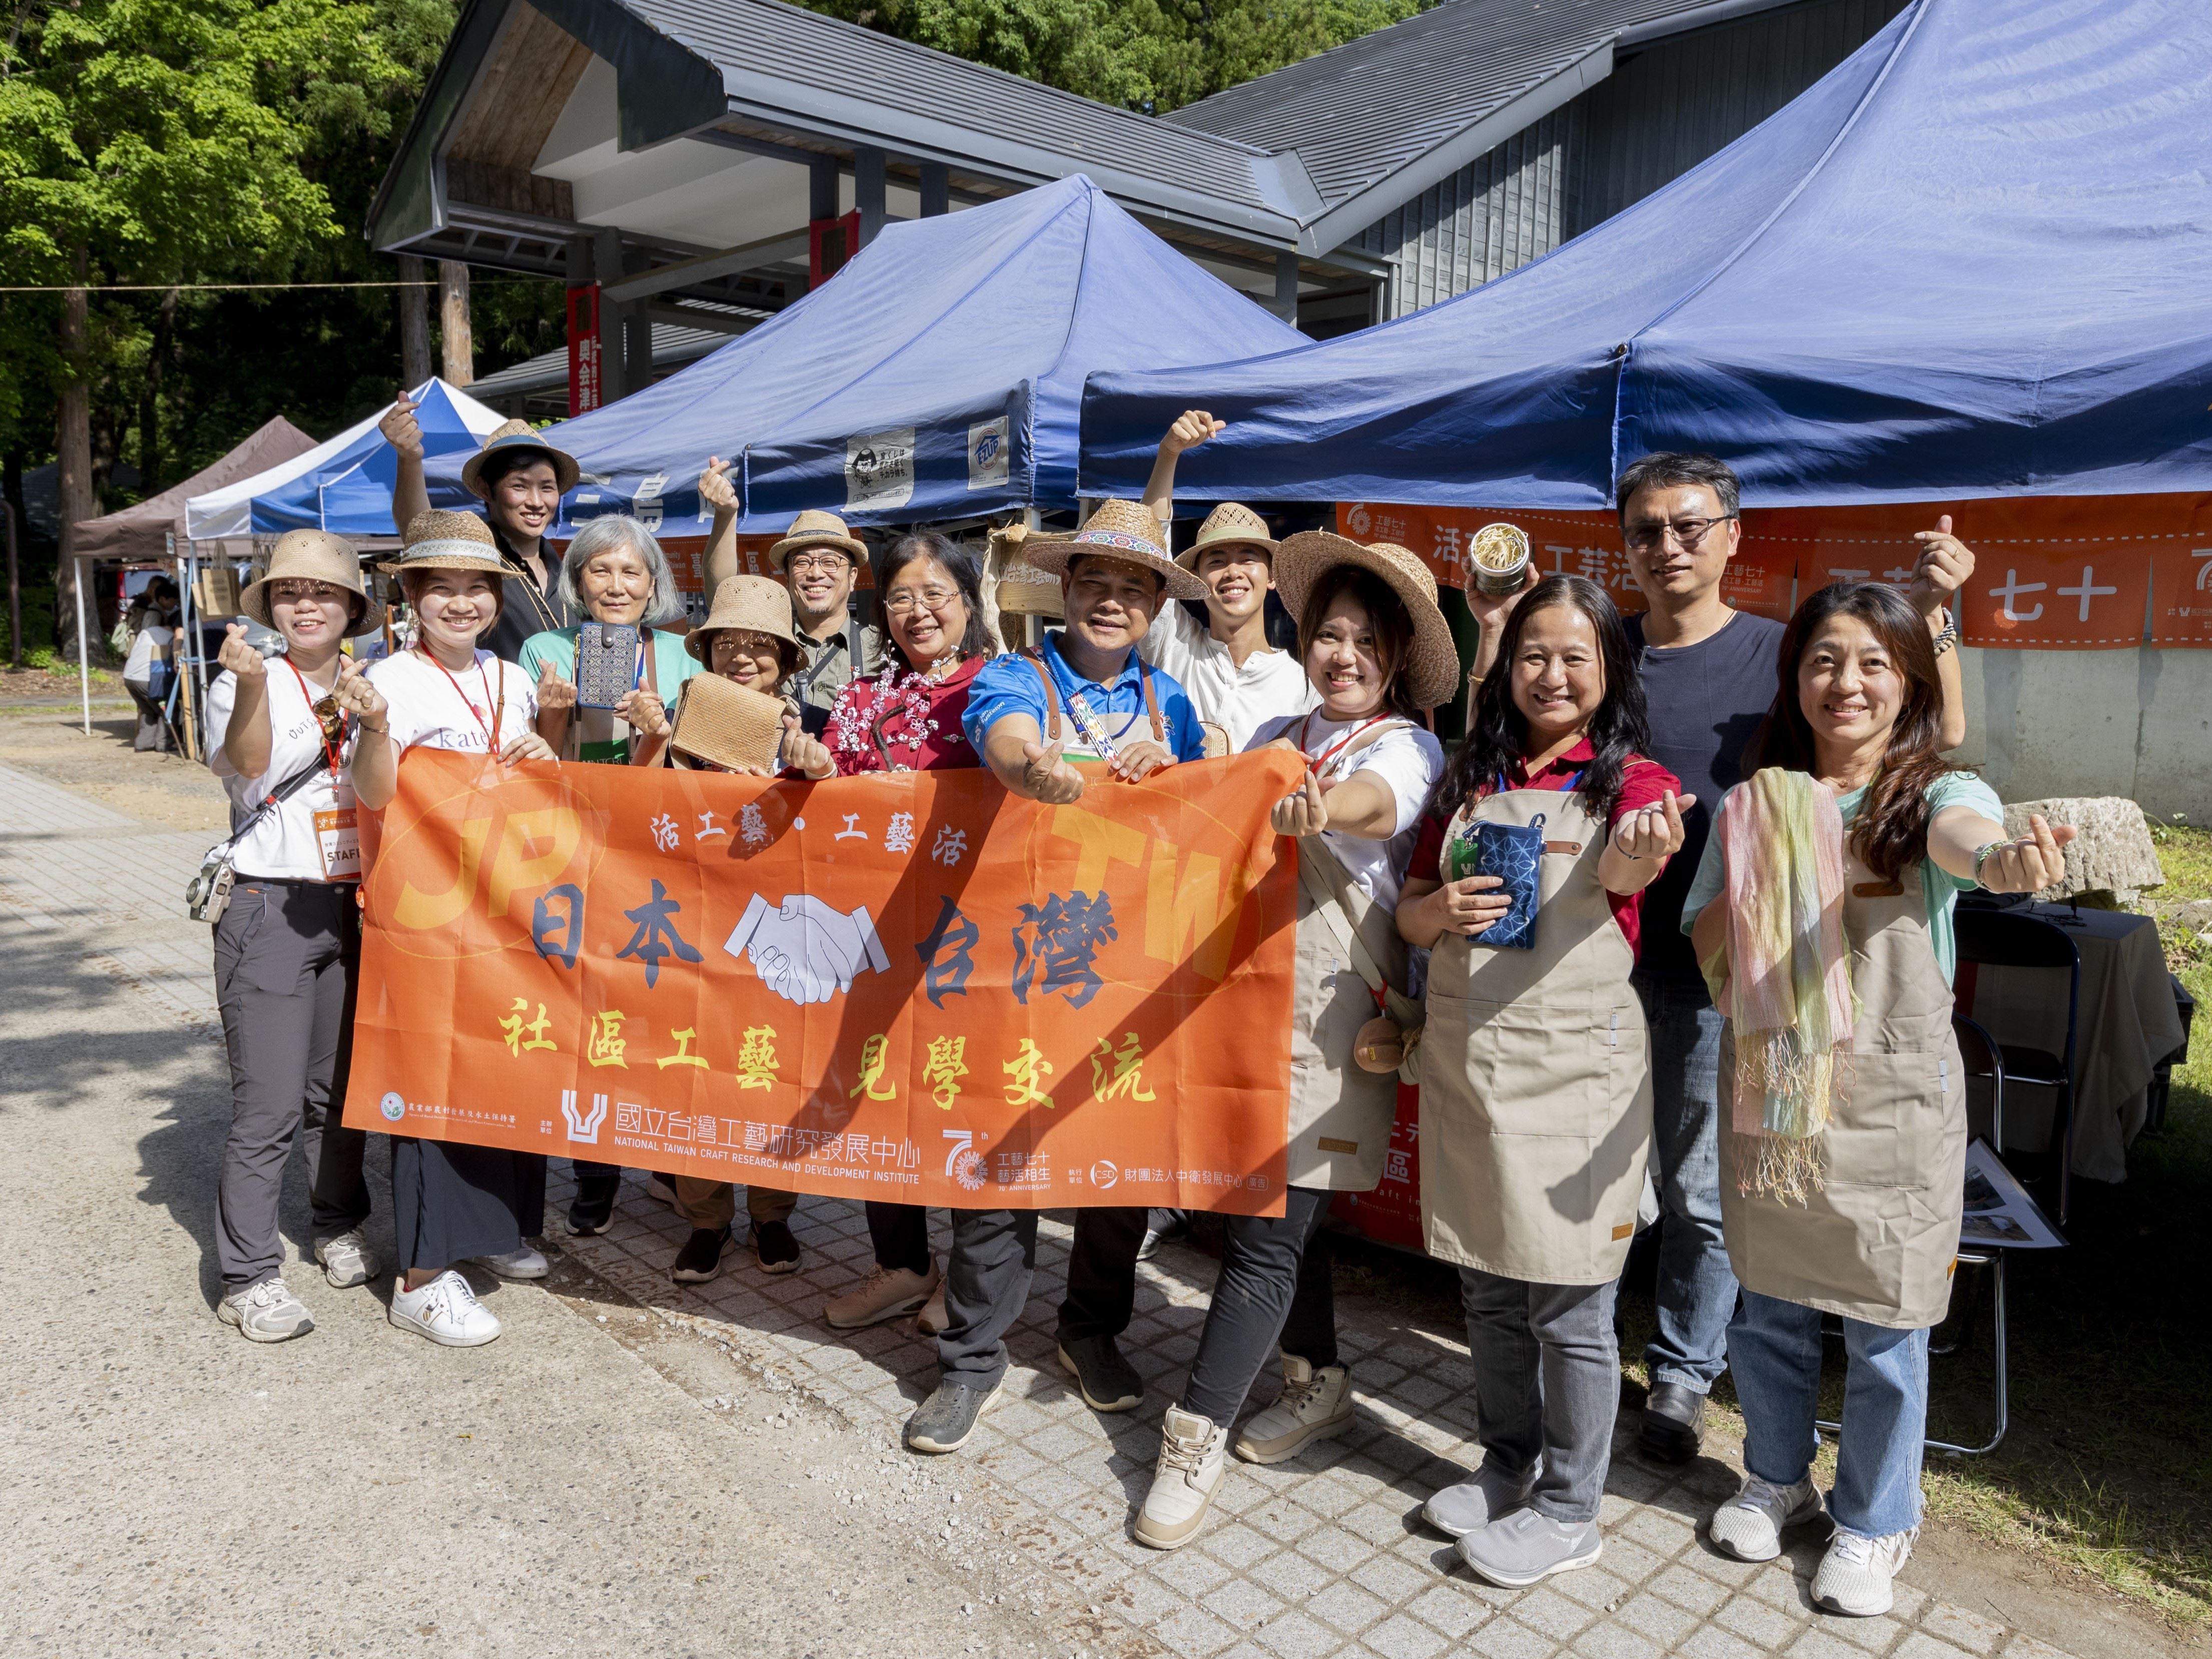 Pertukaran Internasional Taiwan-Jepang, Seni Kerajinan Komunitas Taiwan Ciptakan Energi Baru